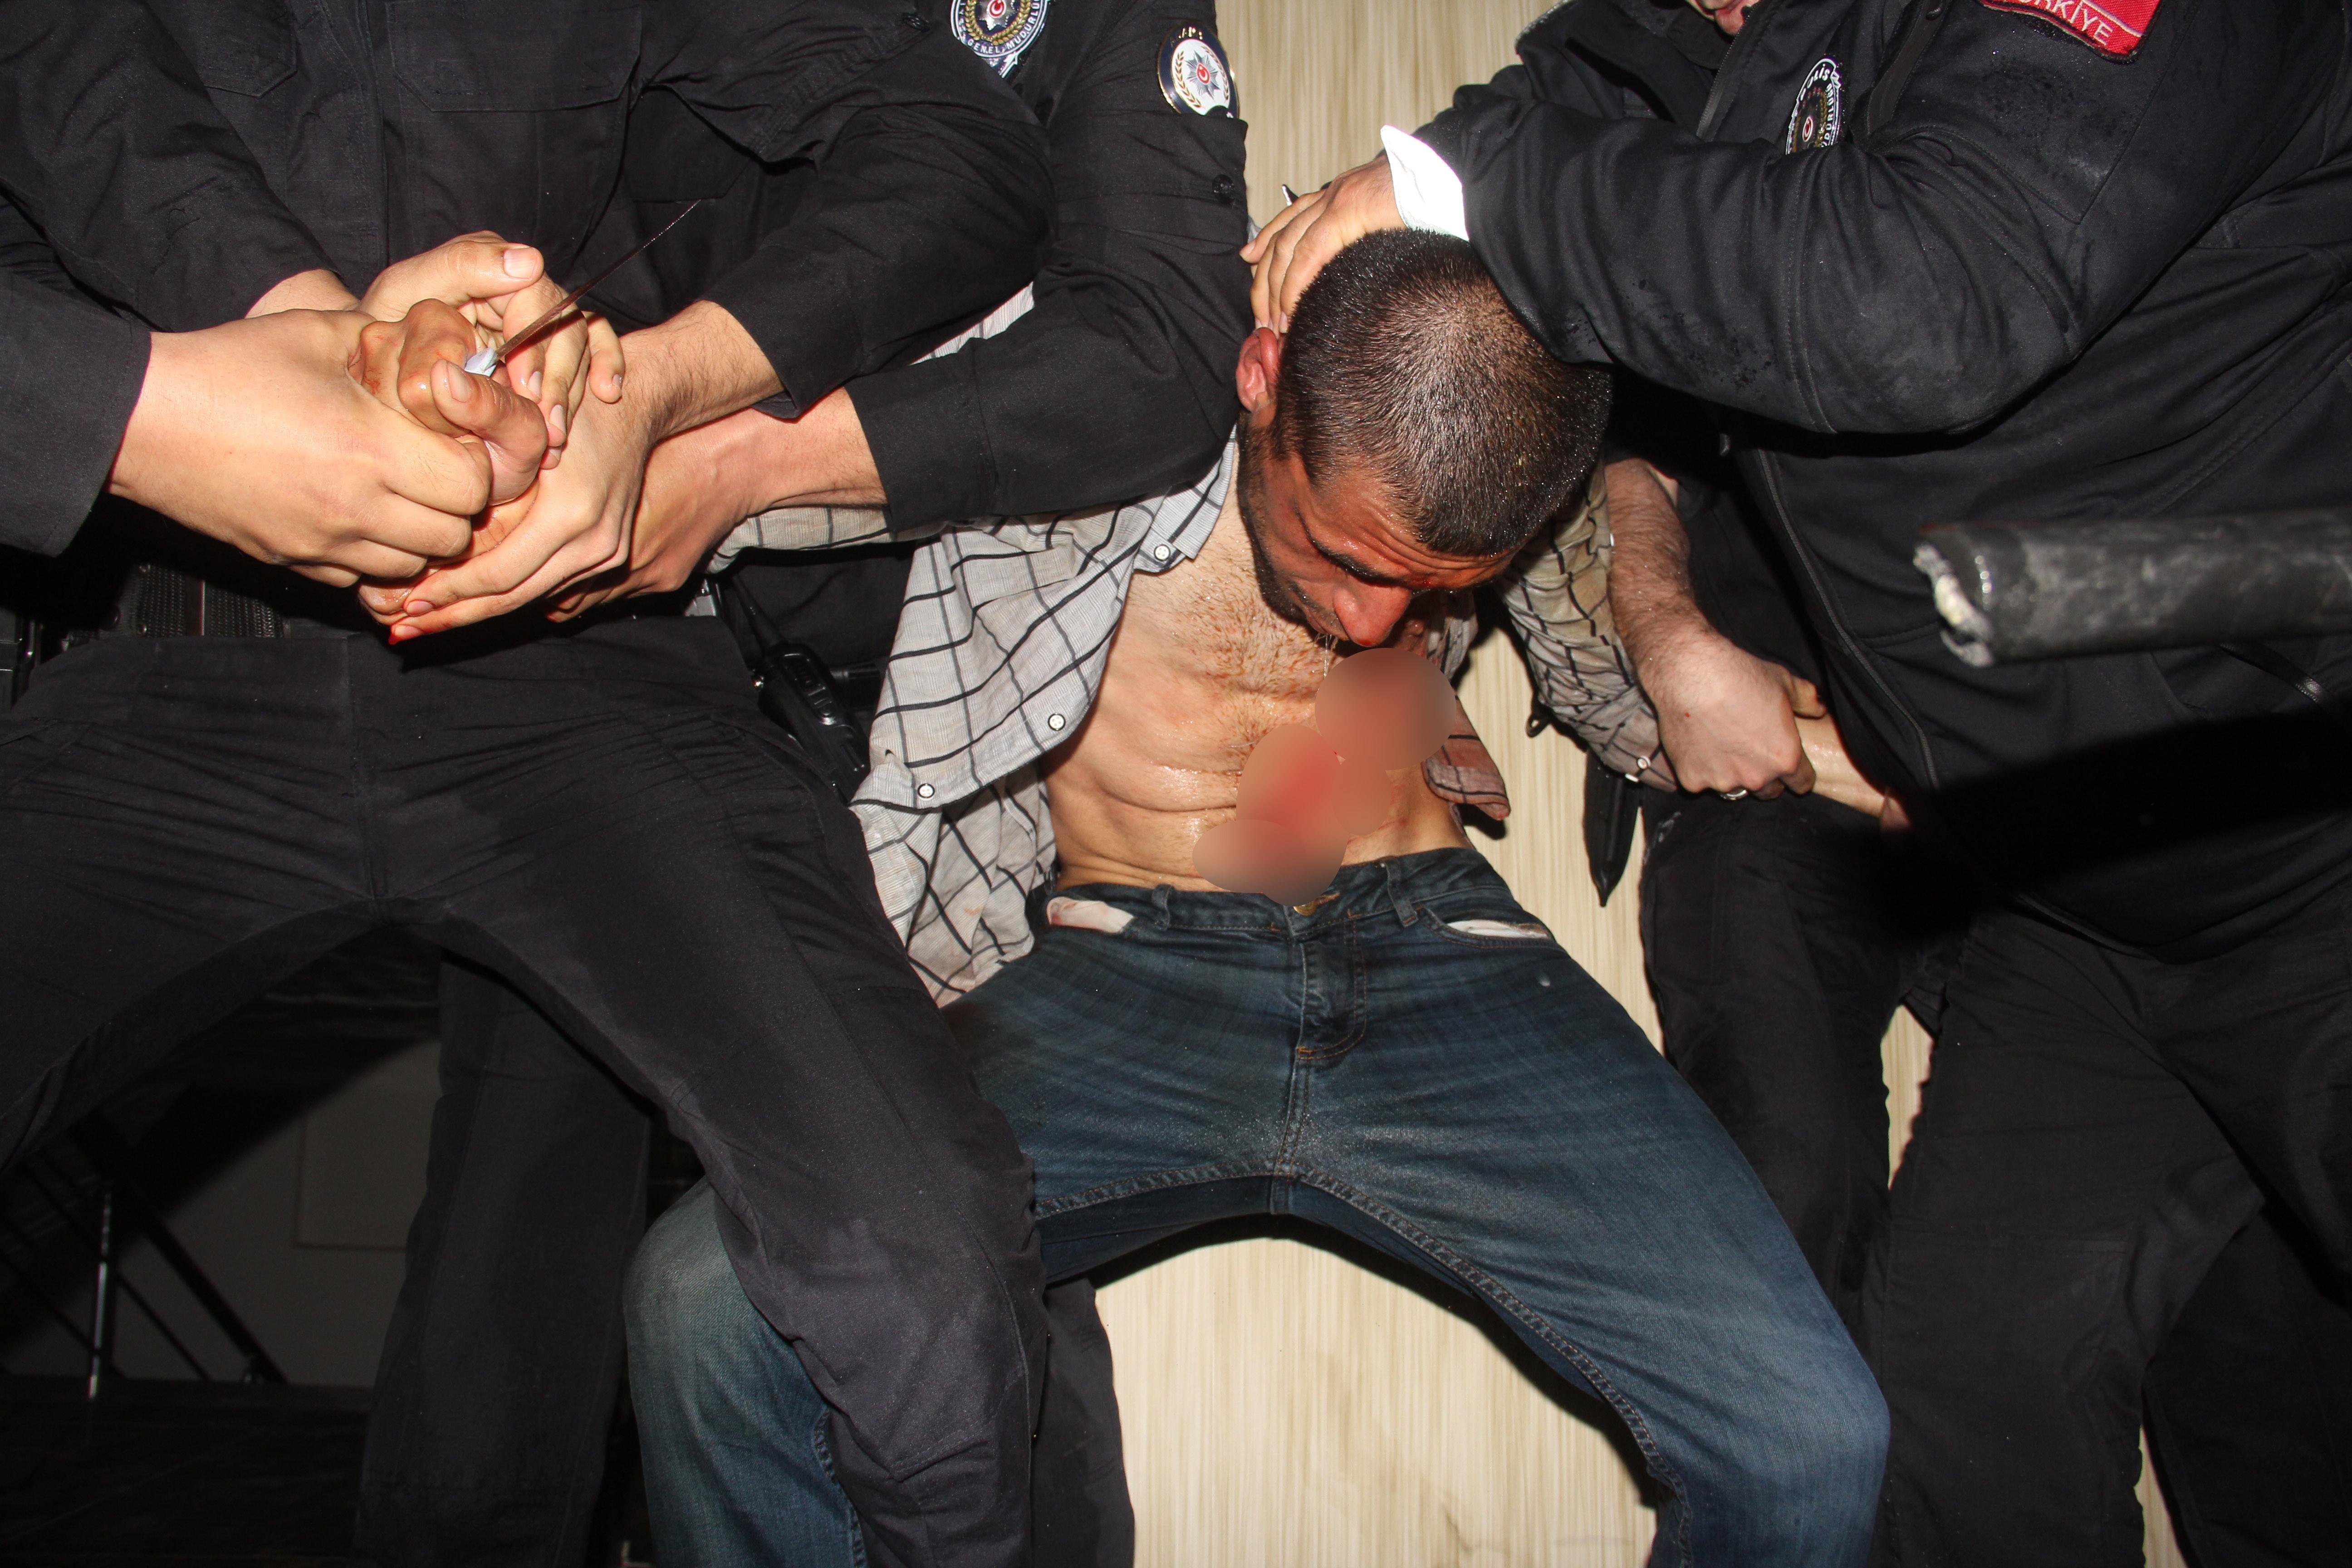 Adanada polise bıçakla saldıran genci itfaiye ve güvenlik güçleri etkisiz hale getirdi